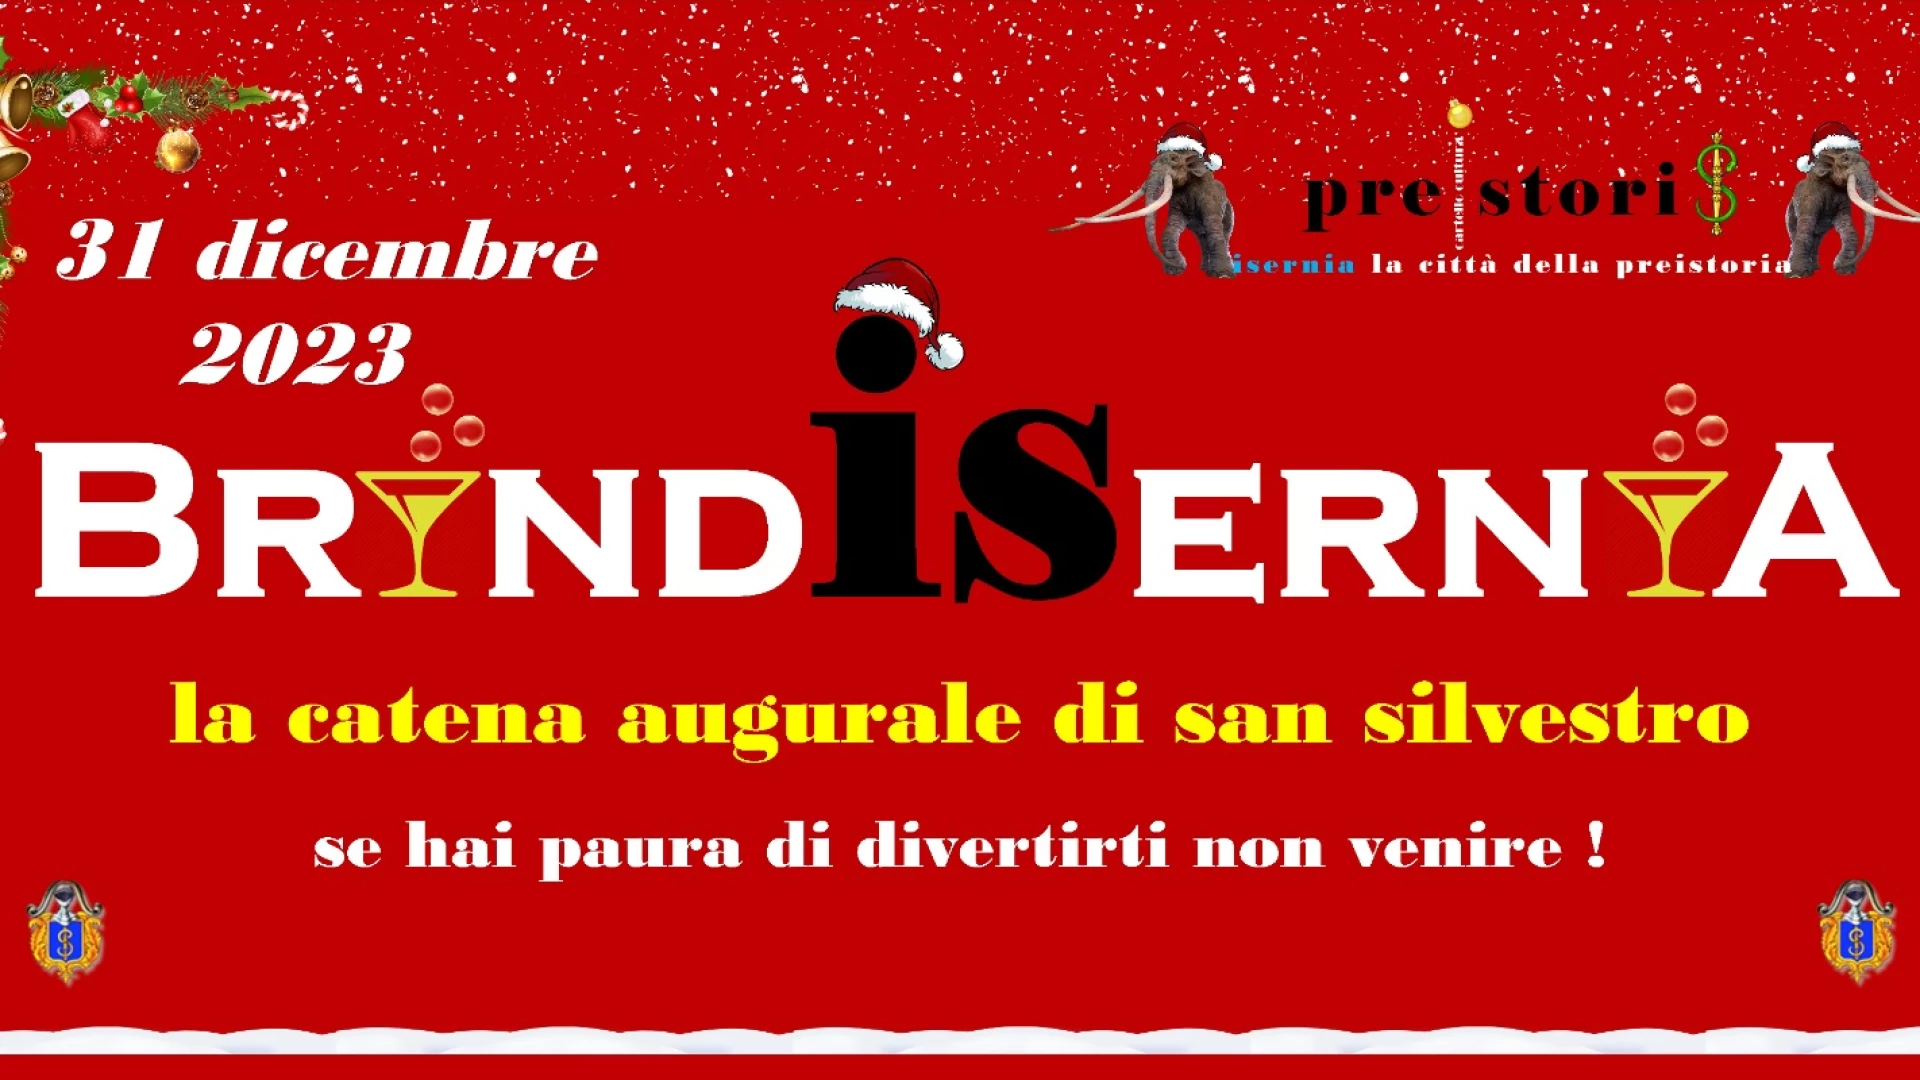 Isernia: appuntamento a domenica 31 dicembre con “BrindiSernia”.